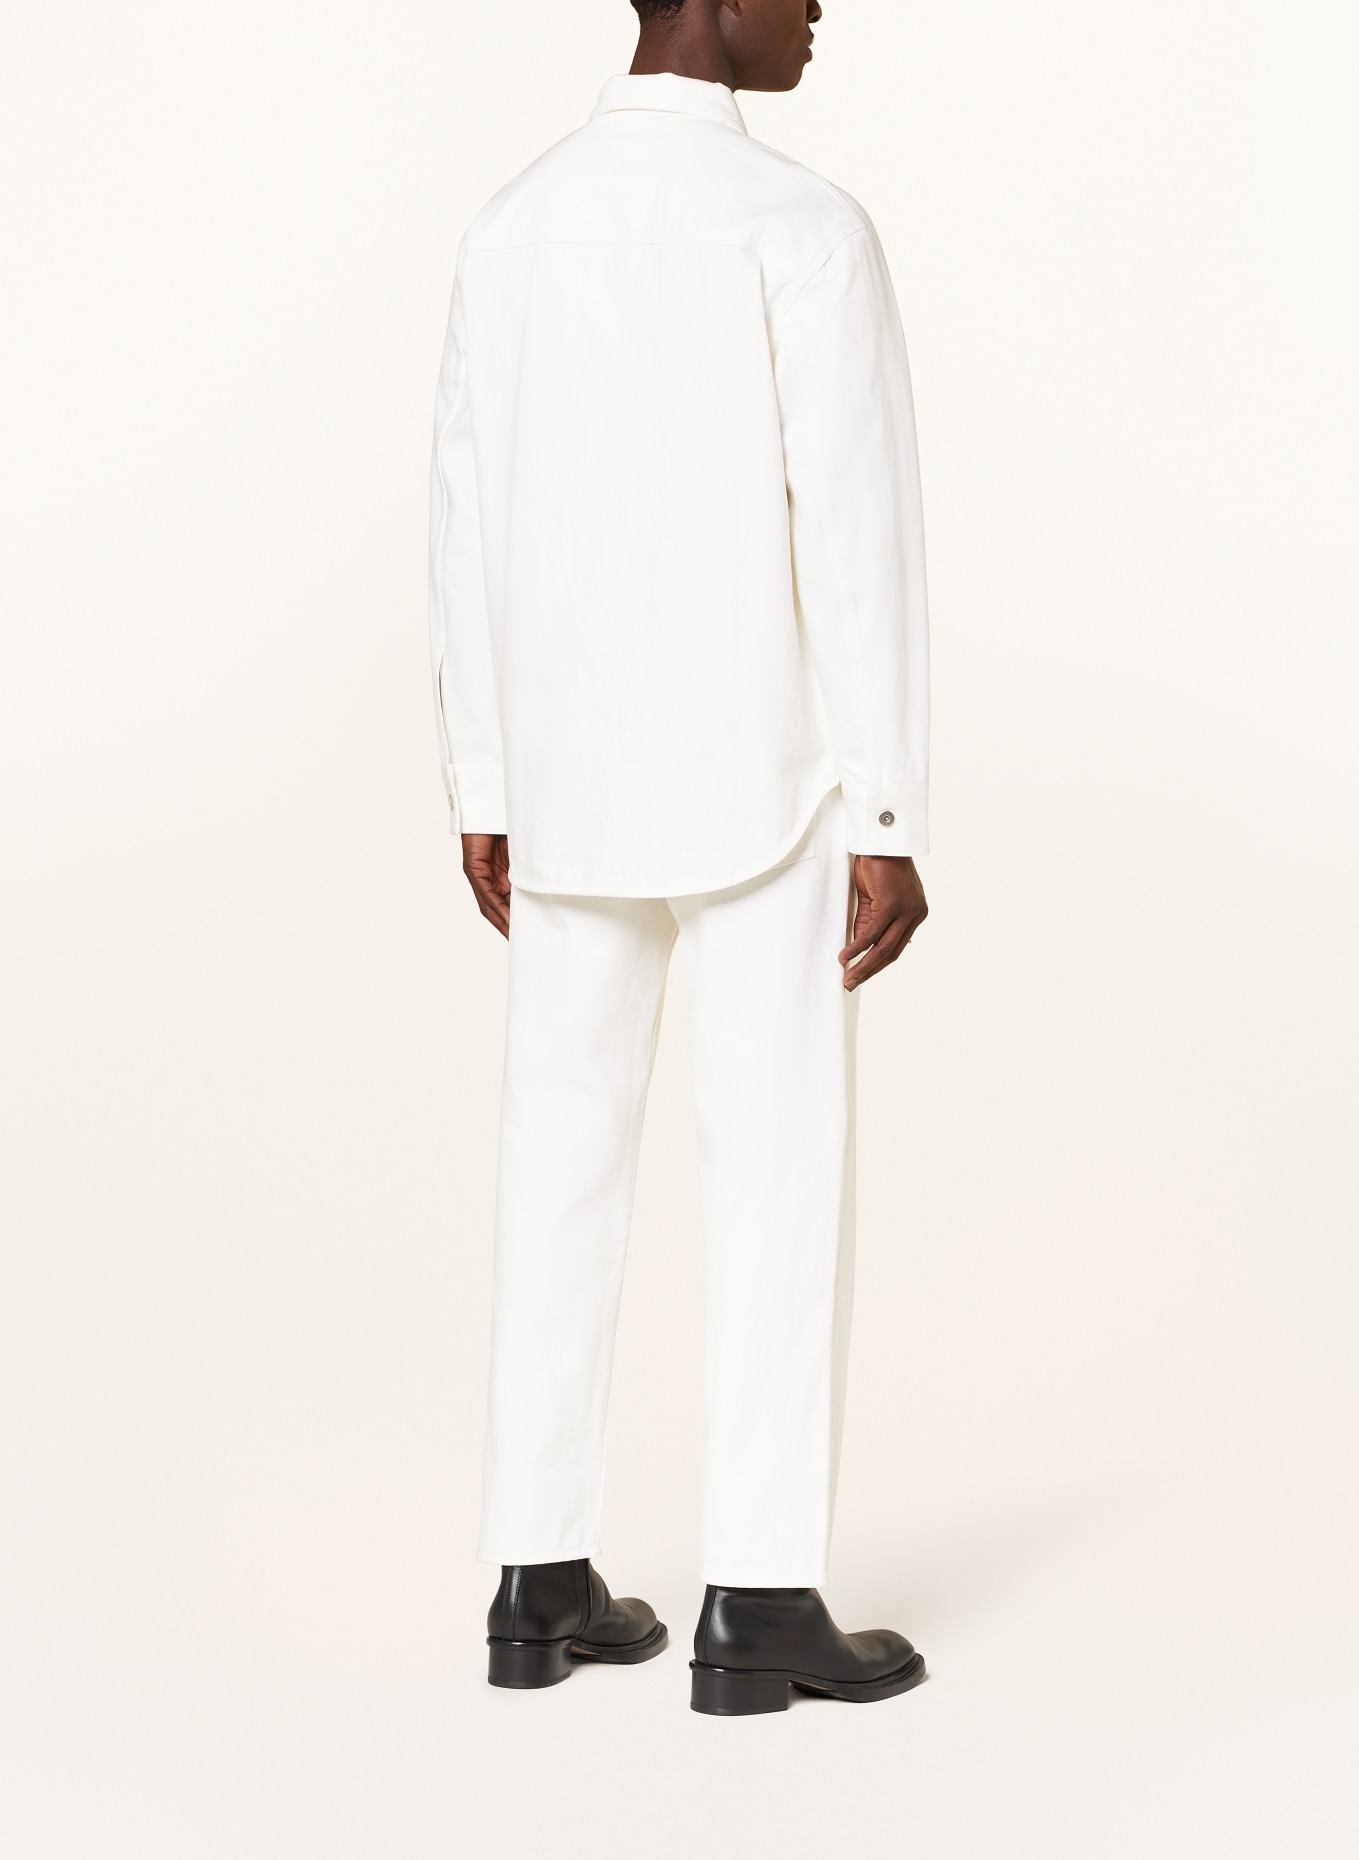 JIL SANDER Denim overshirt, Color: WHITE (Image 3)